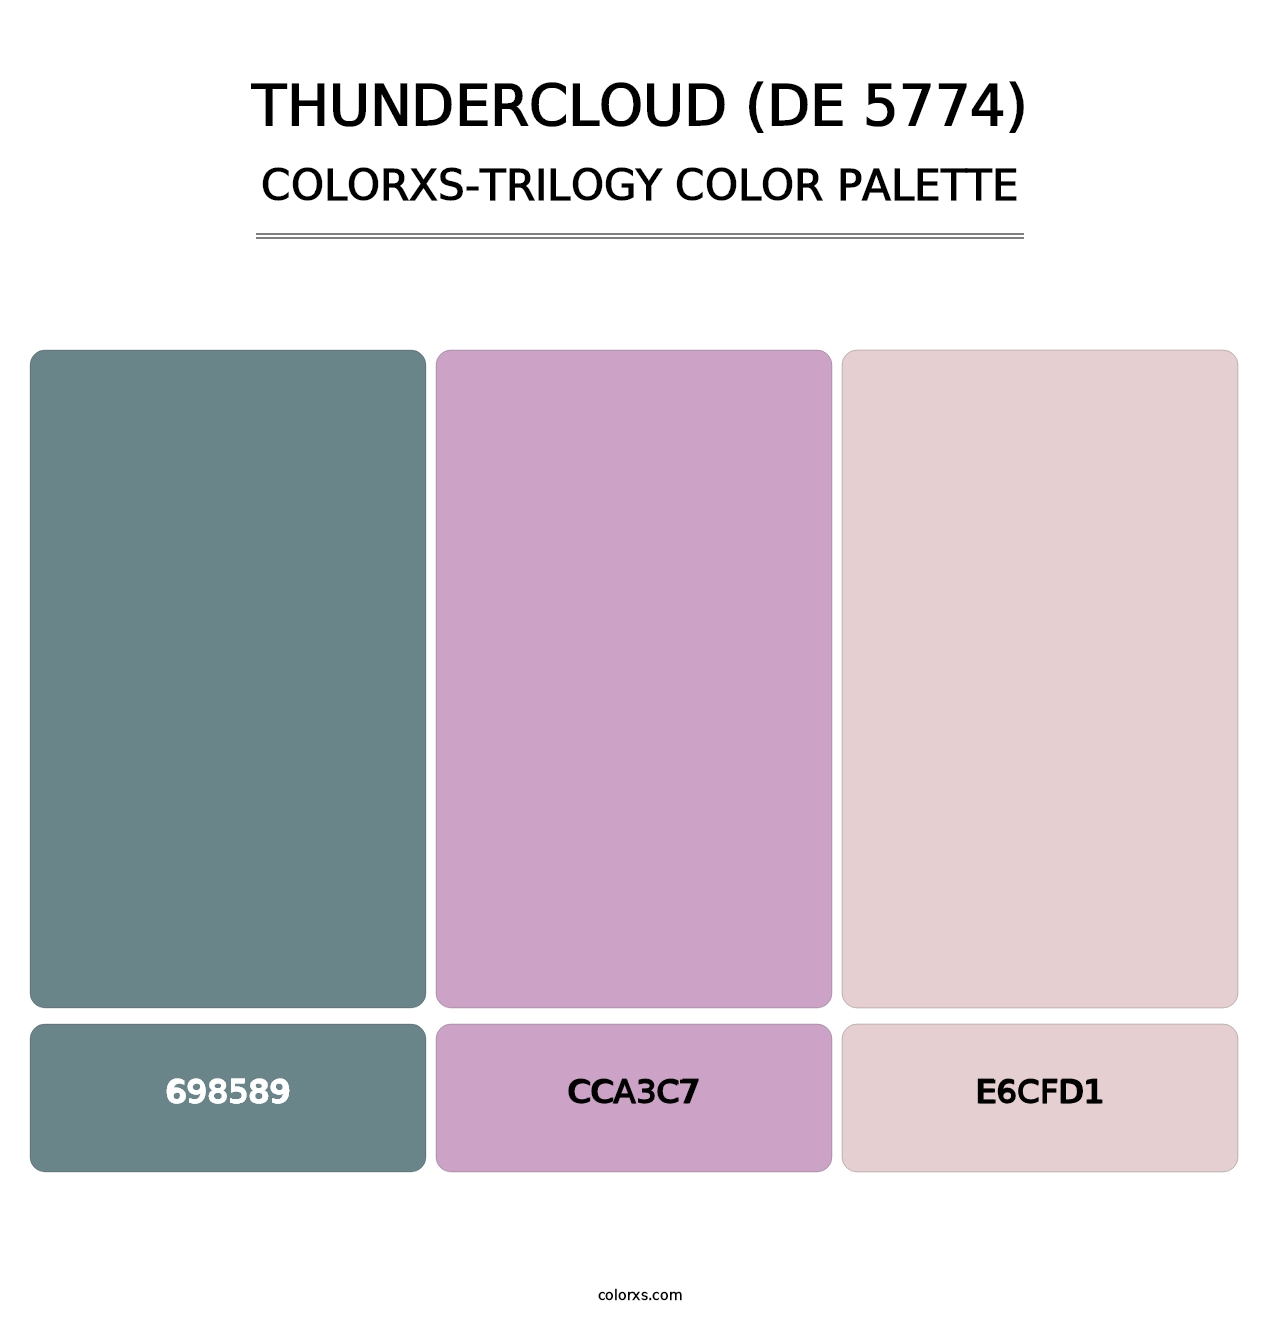 Thundercloud (DE 5774) - Colorxs Trilogy Palette